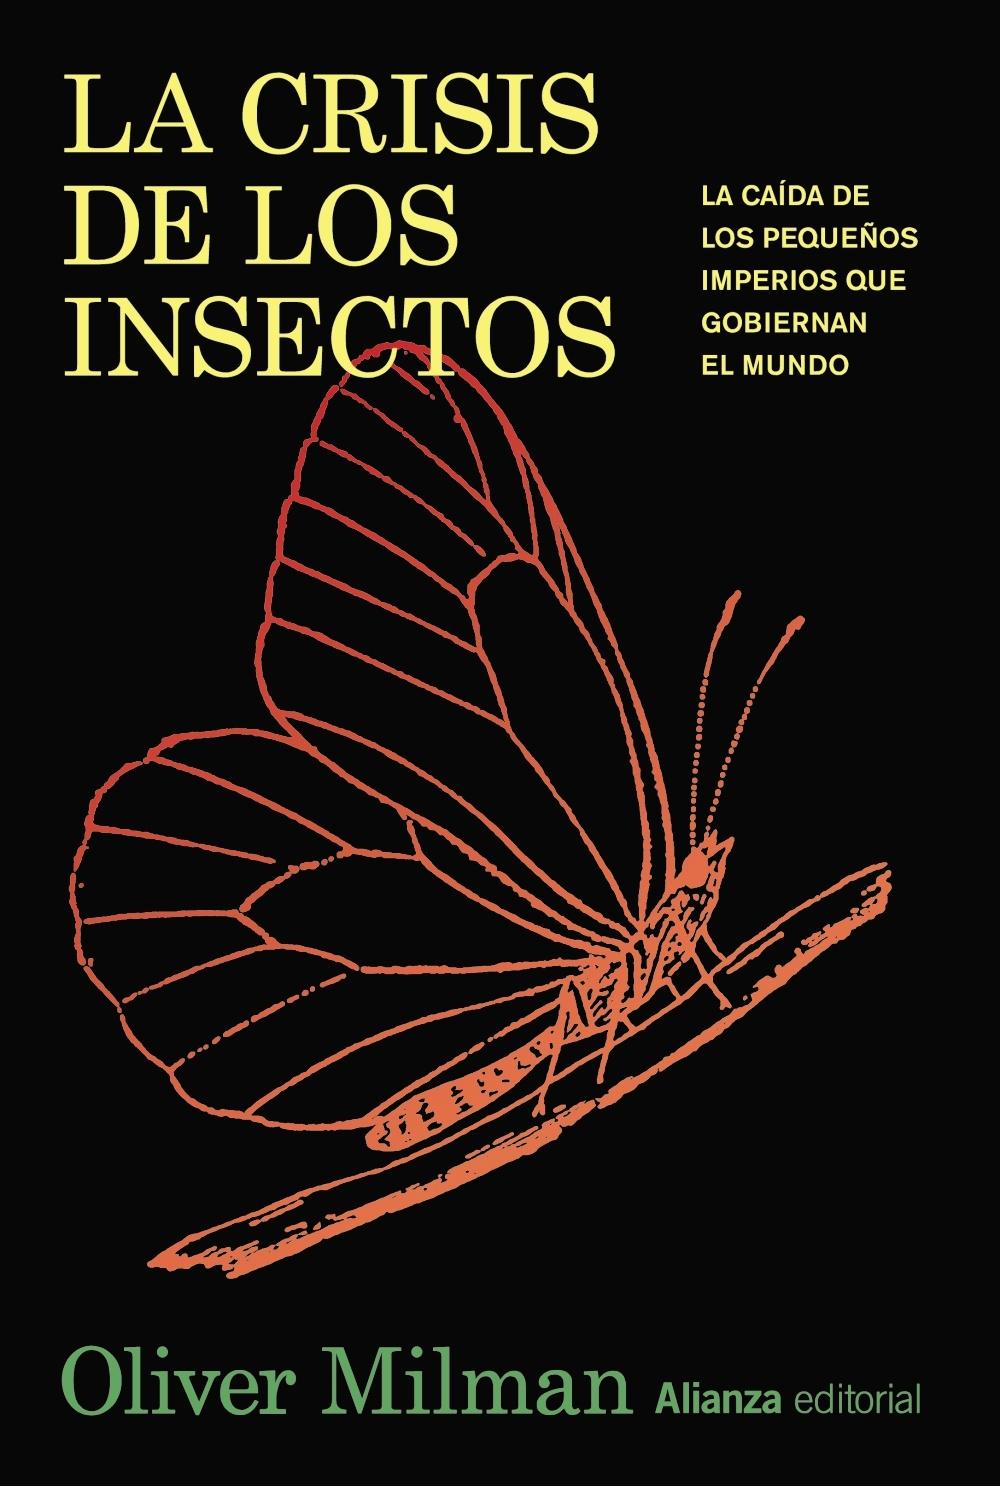 La Crisis de los Insectos "La Caída de los Pequeños Imperios que Gobiernan el Mundo"